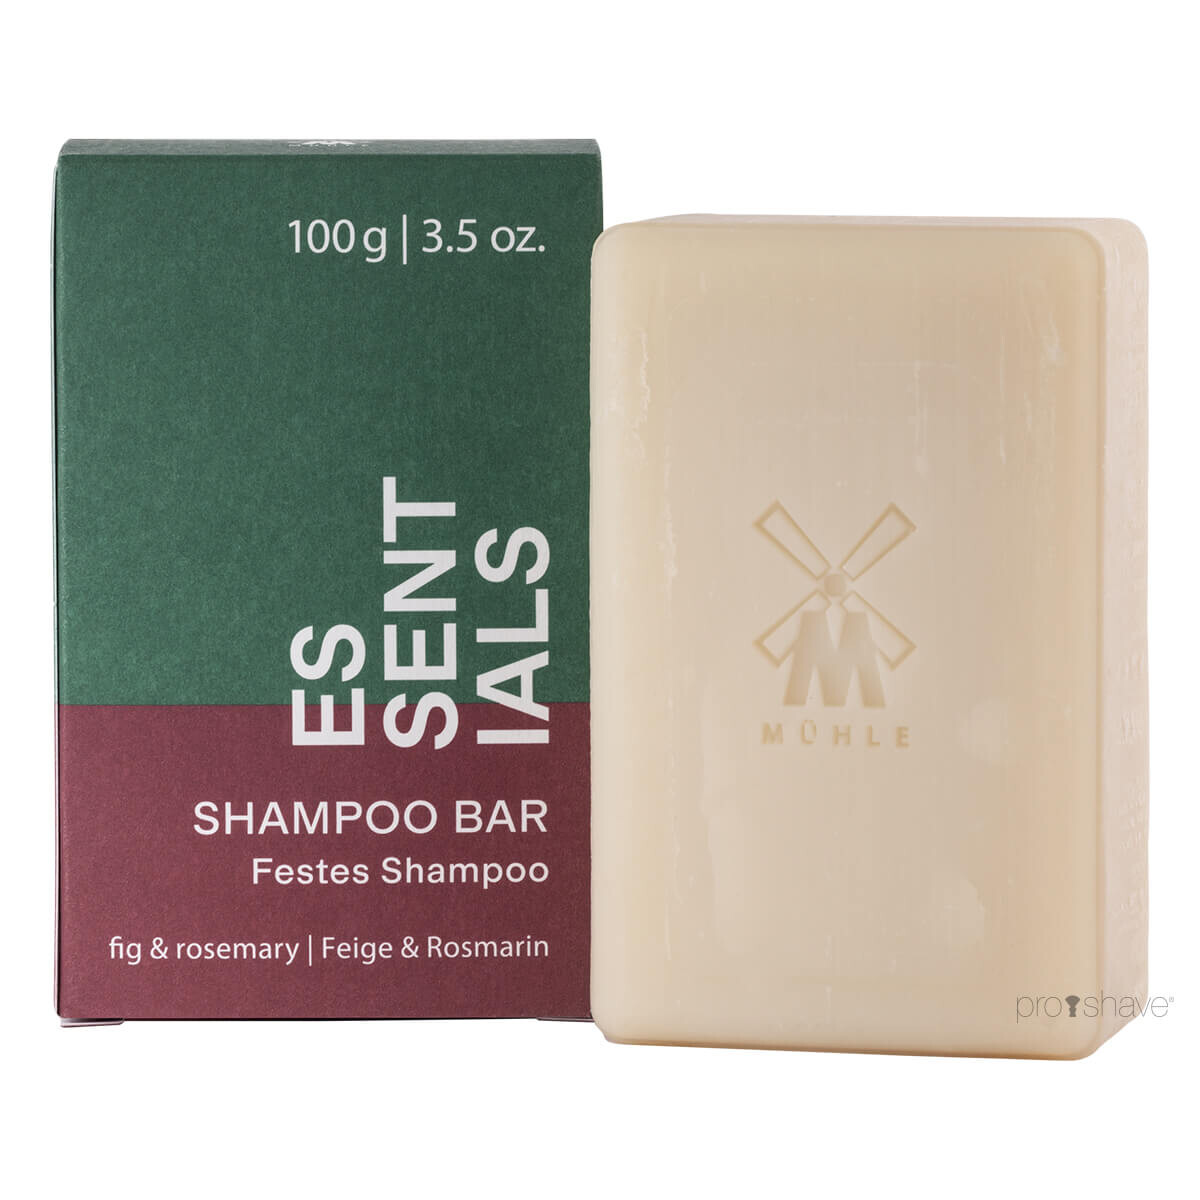 Billede af Mühle Shampoo Bar, Fig & Rosemary, Essentials, 100 gr.